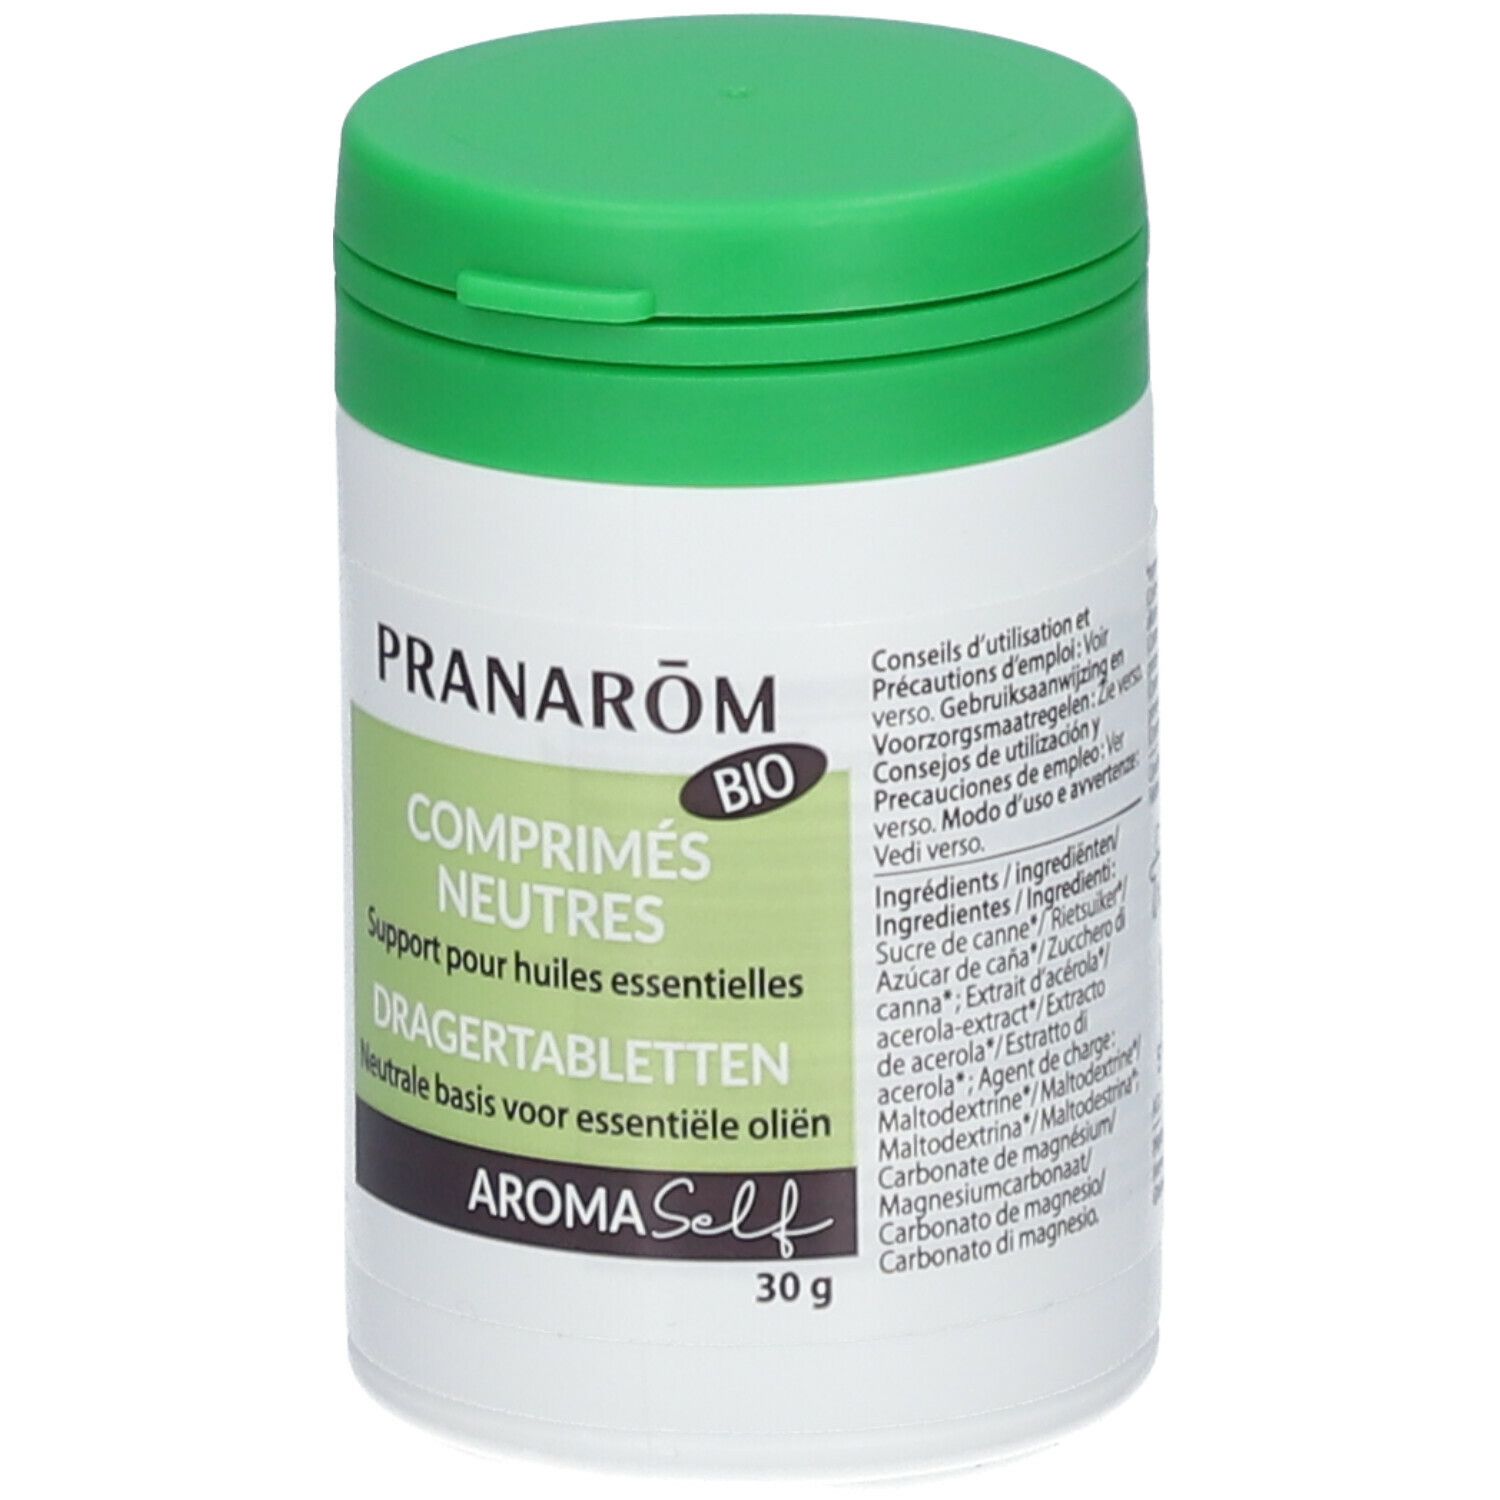 30 Comprimés support pour huiles essentielles Pranarôm